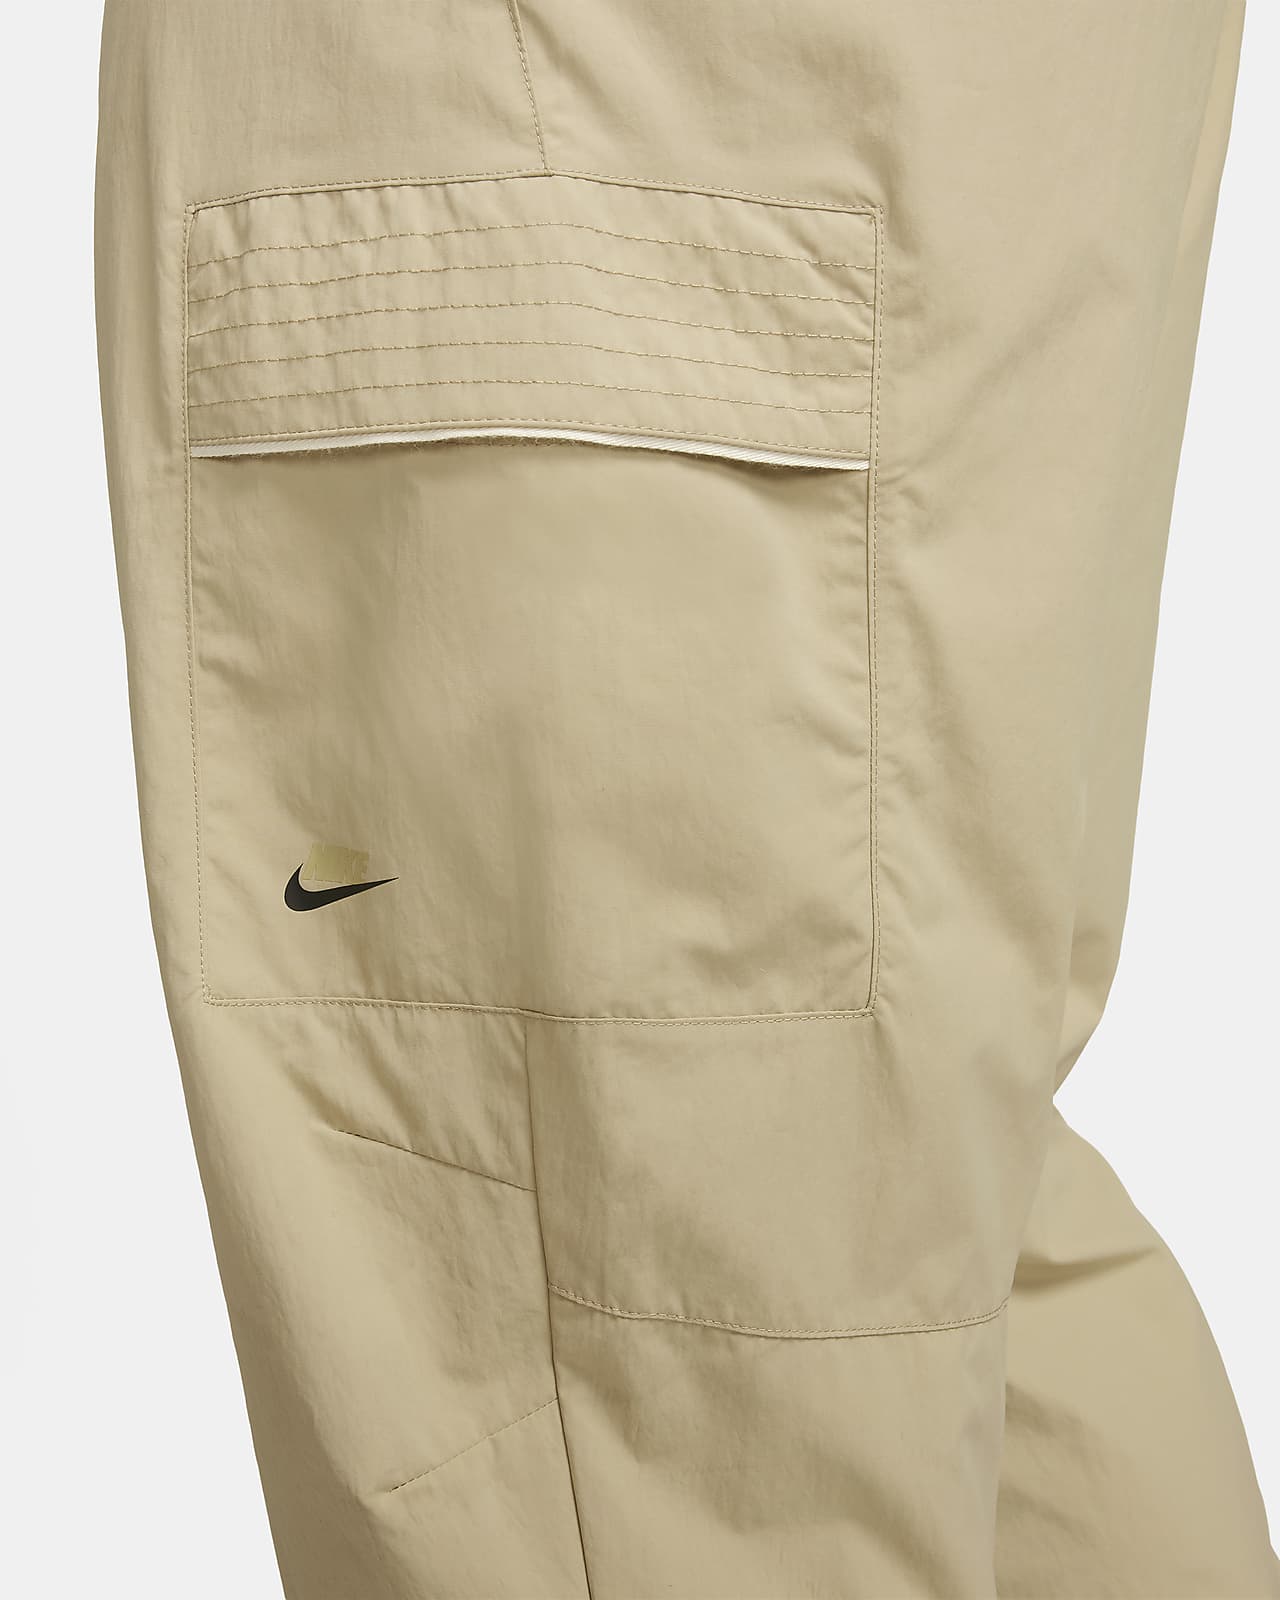 Nike Sportswear Style Essentials Men's Utility Pants.